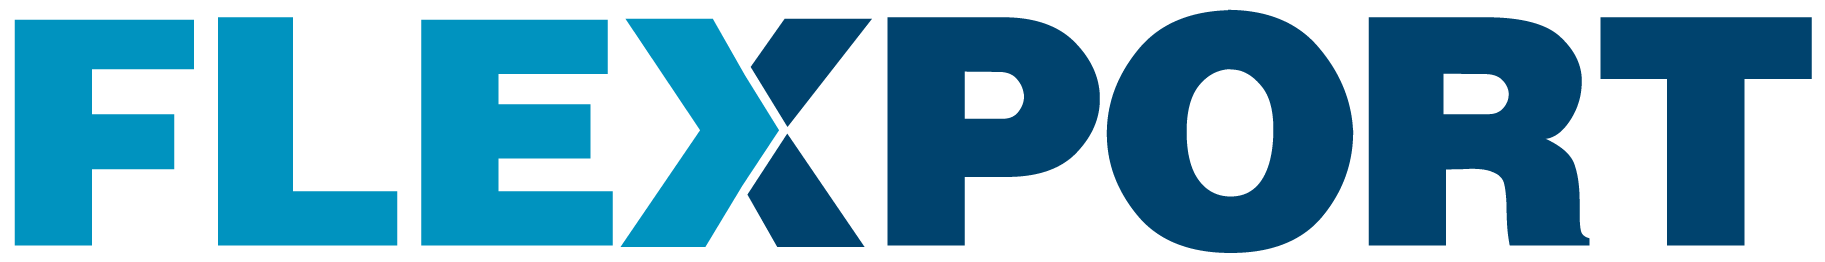 Image result for flexport logo